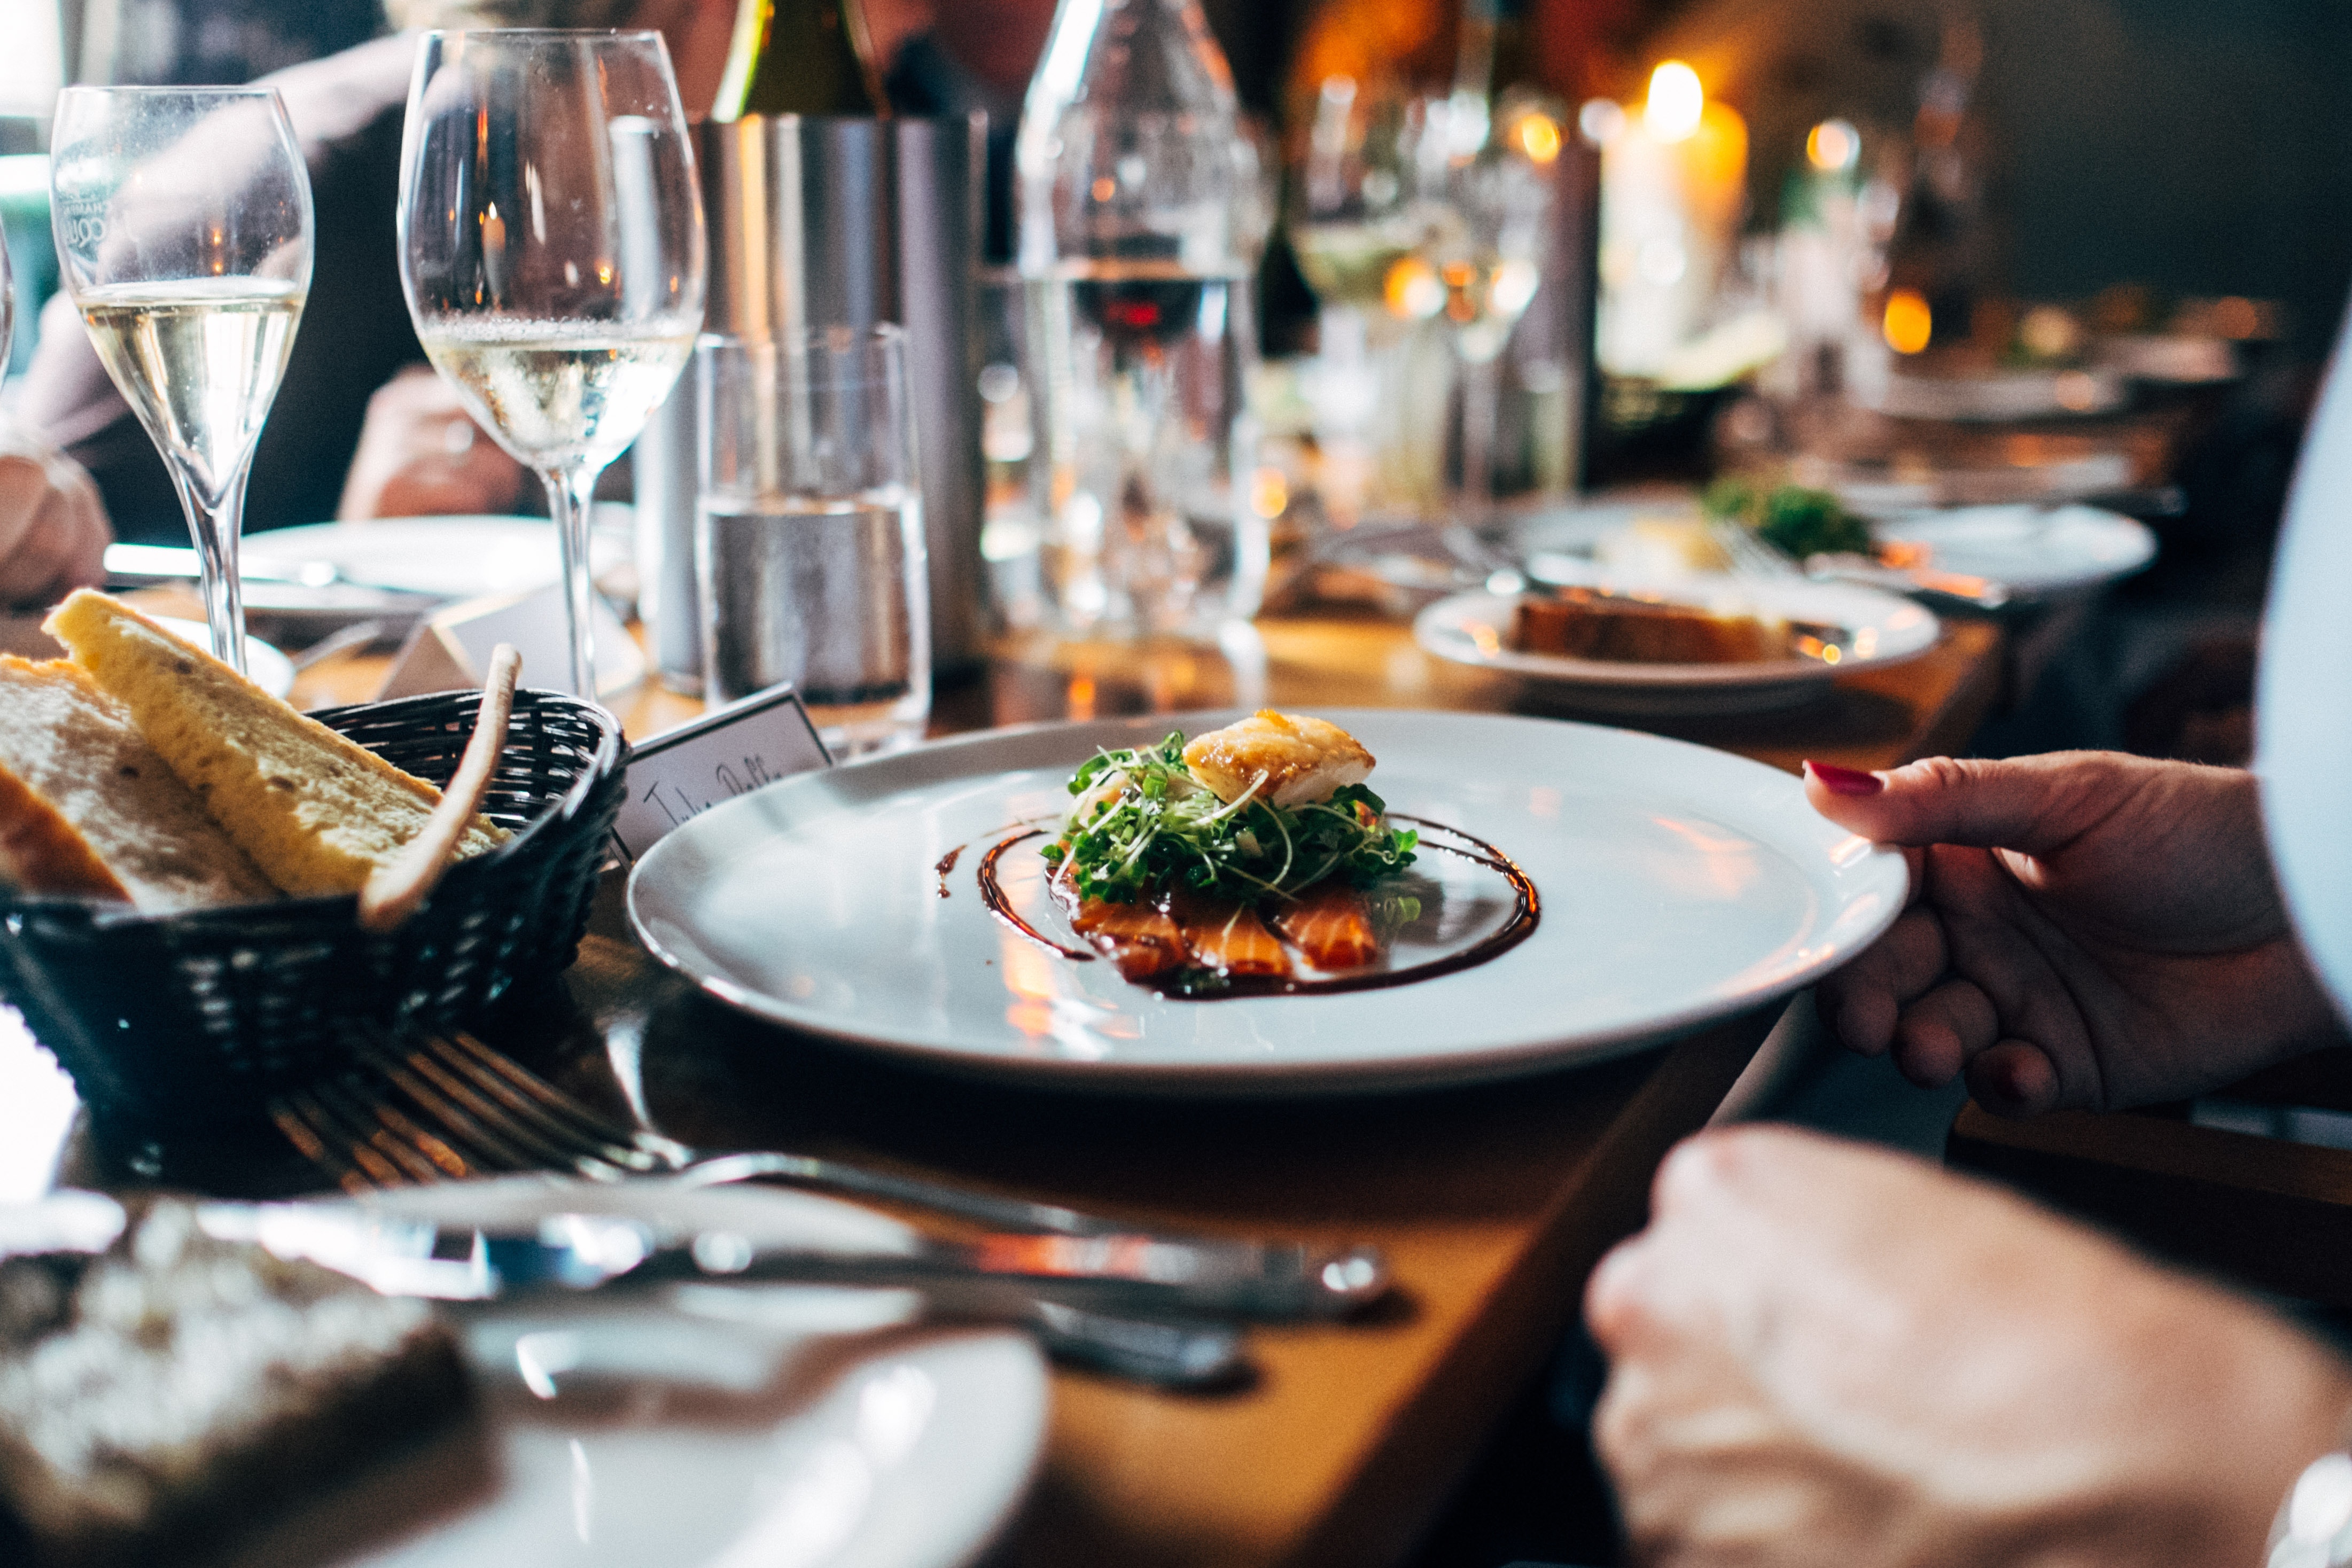 Passive Income allows fine dining